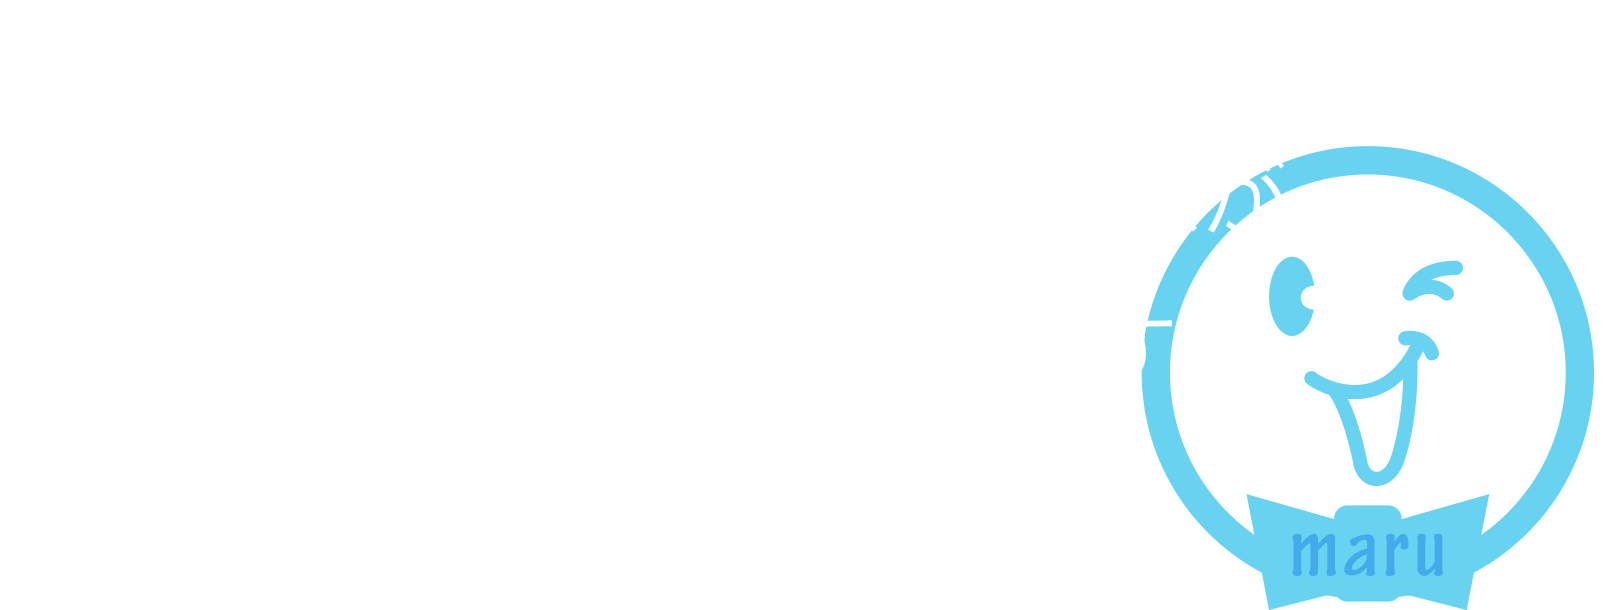 それぞれの求める出会いの形をつくるアフターマッチングが『sanmarusan』です。